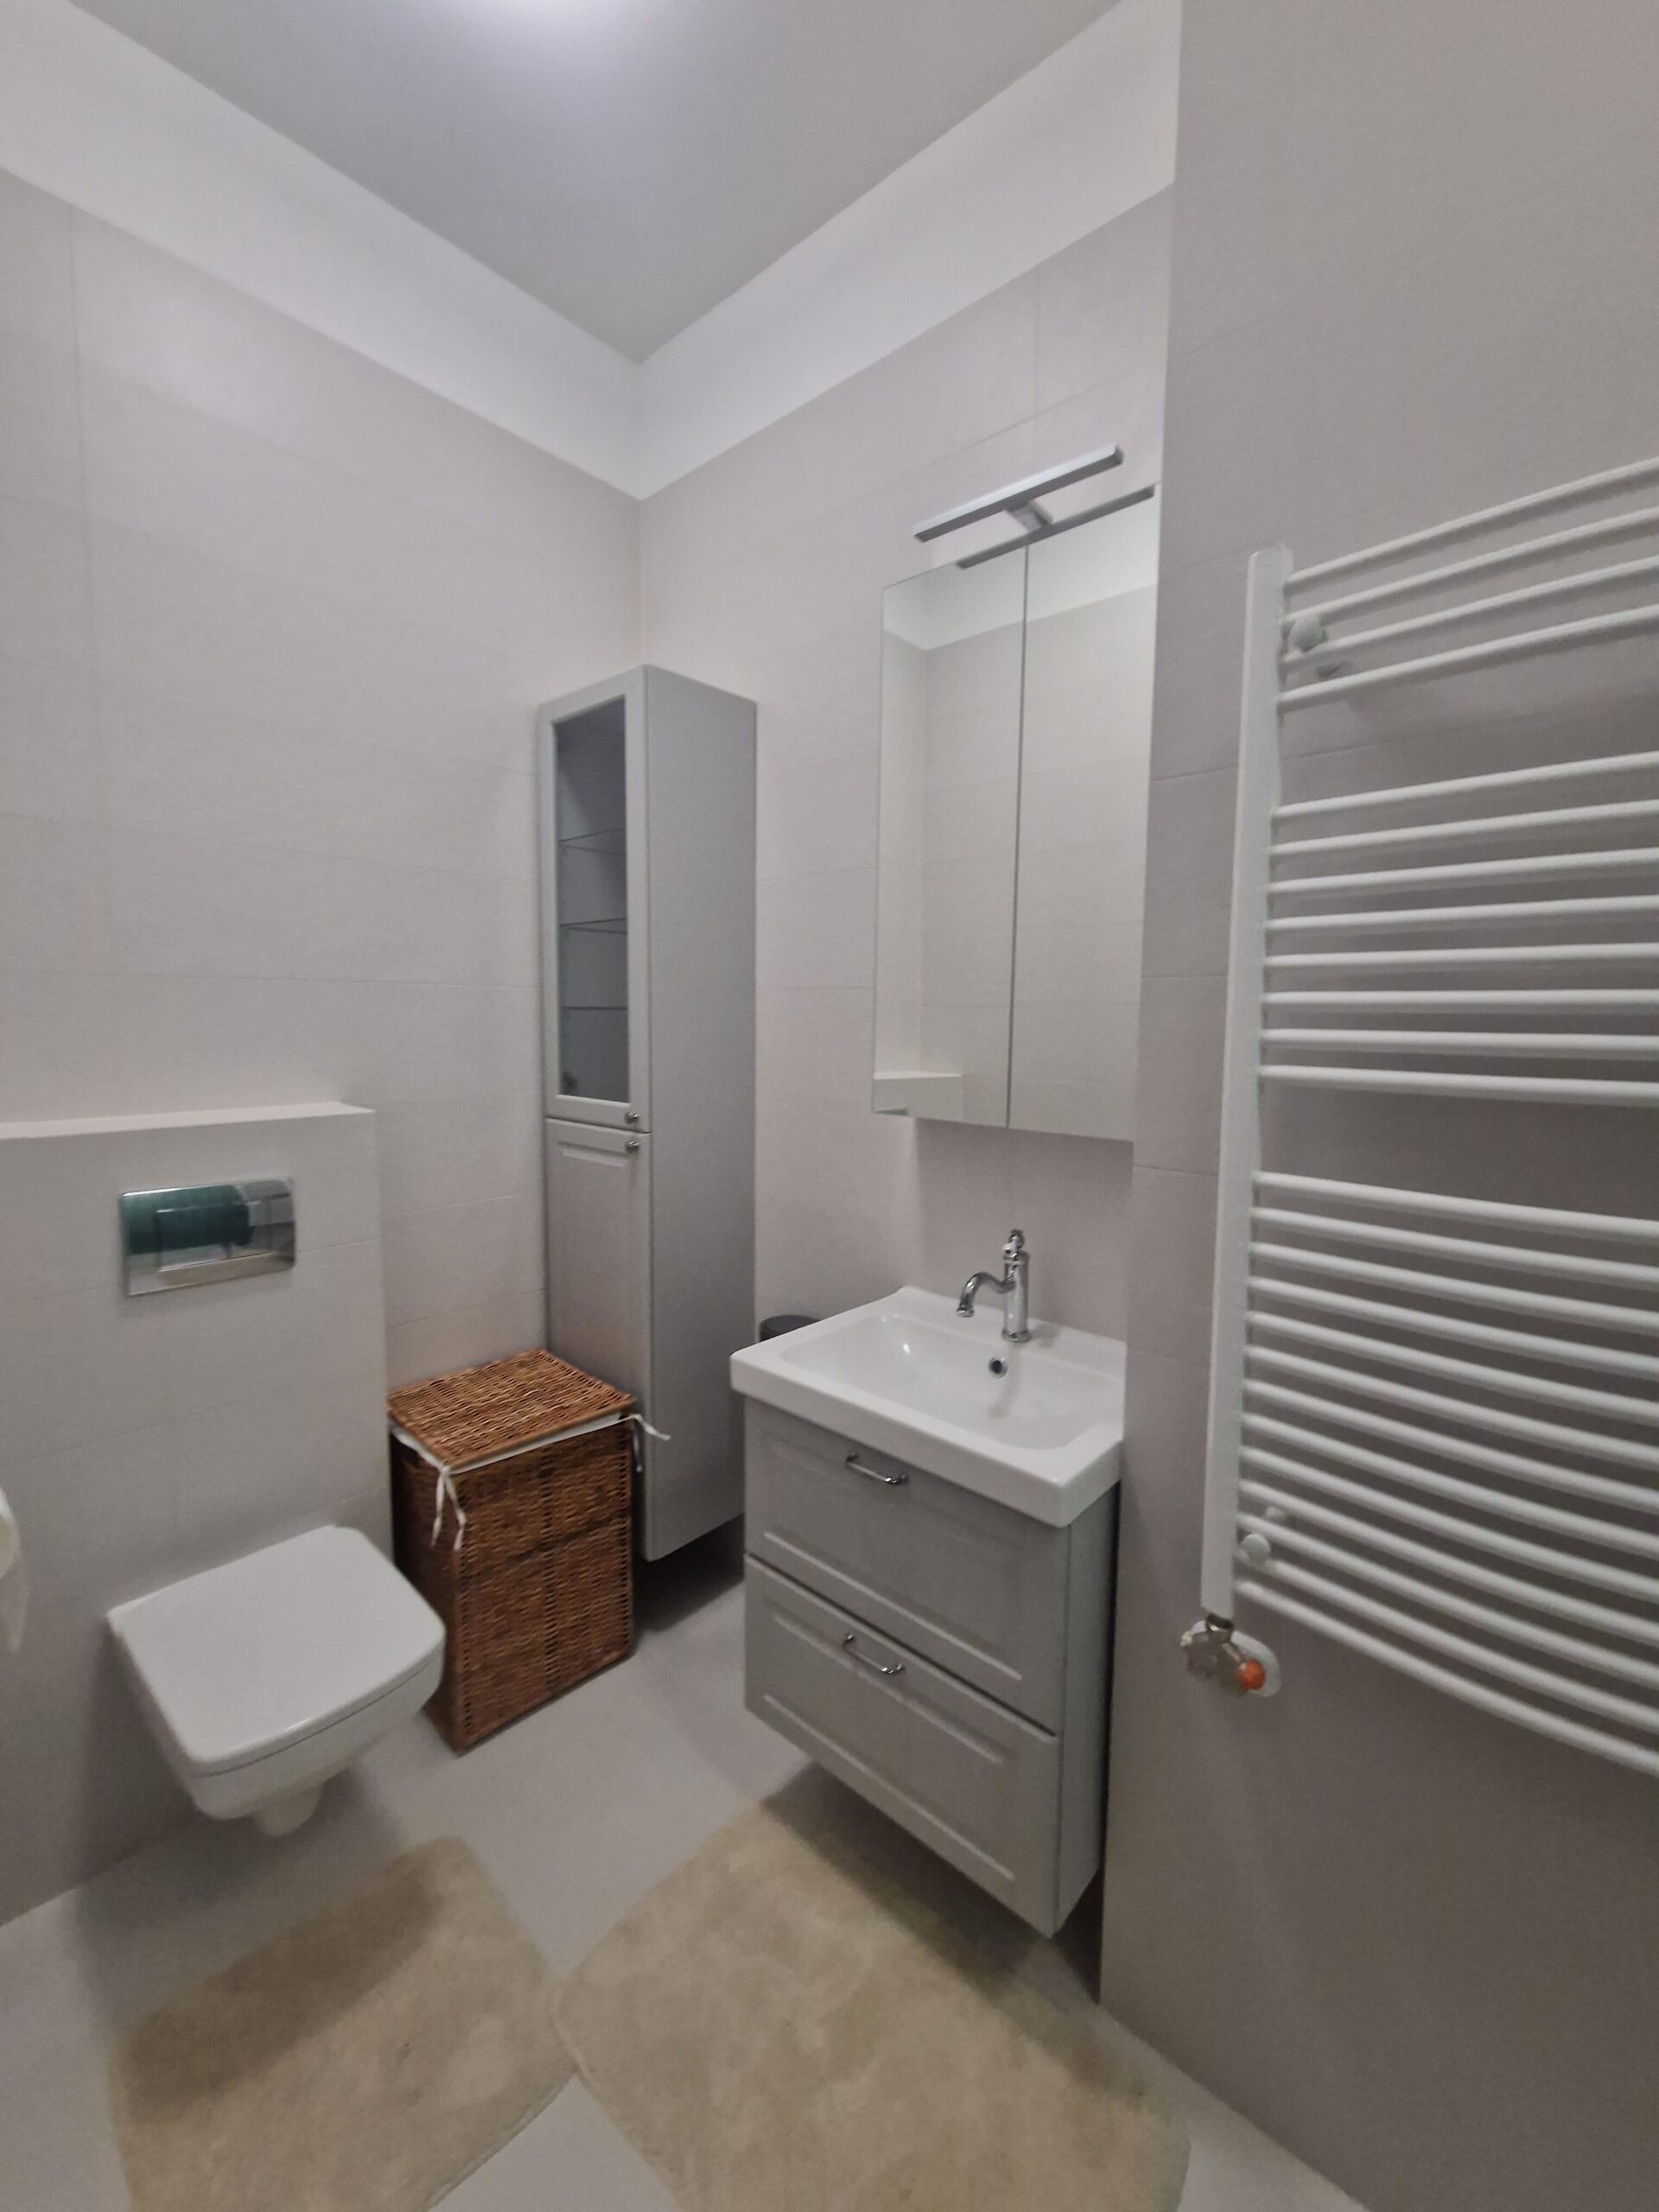 Fürdőszoba home staging szolgáltatással ingatlanközvetítésre való felkészítés előtti állapotban.